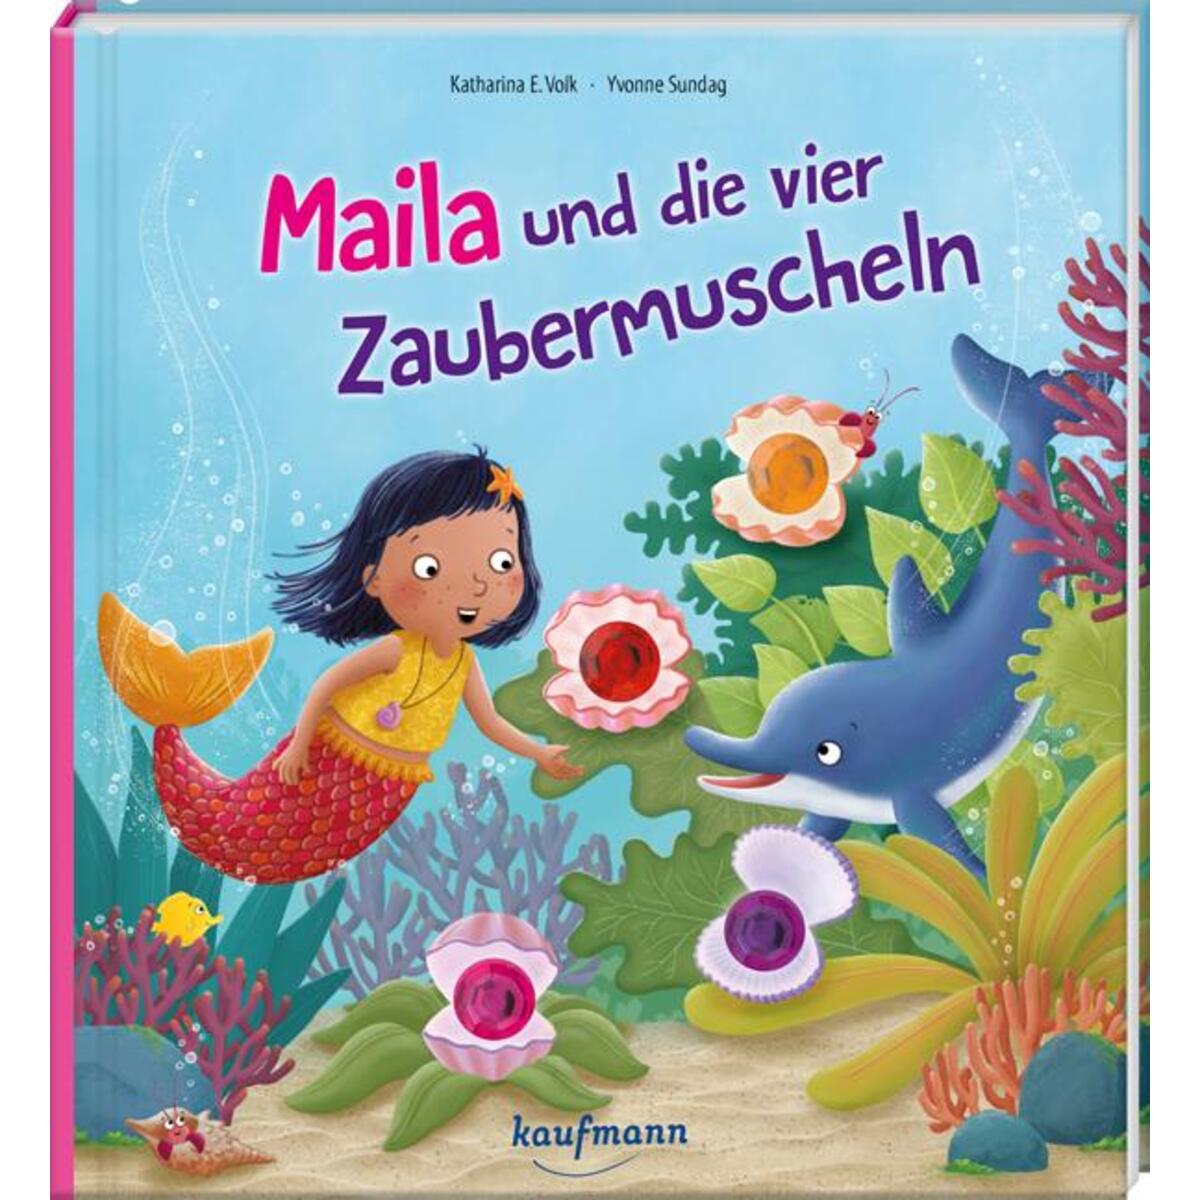 Maila und die vier Zaubermuscheln von Kaufmann Ernst Vlg GmbH